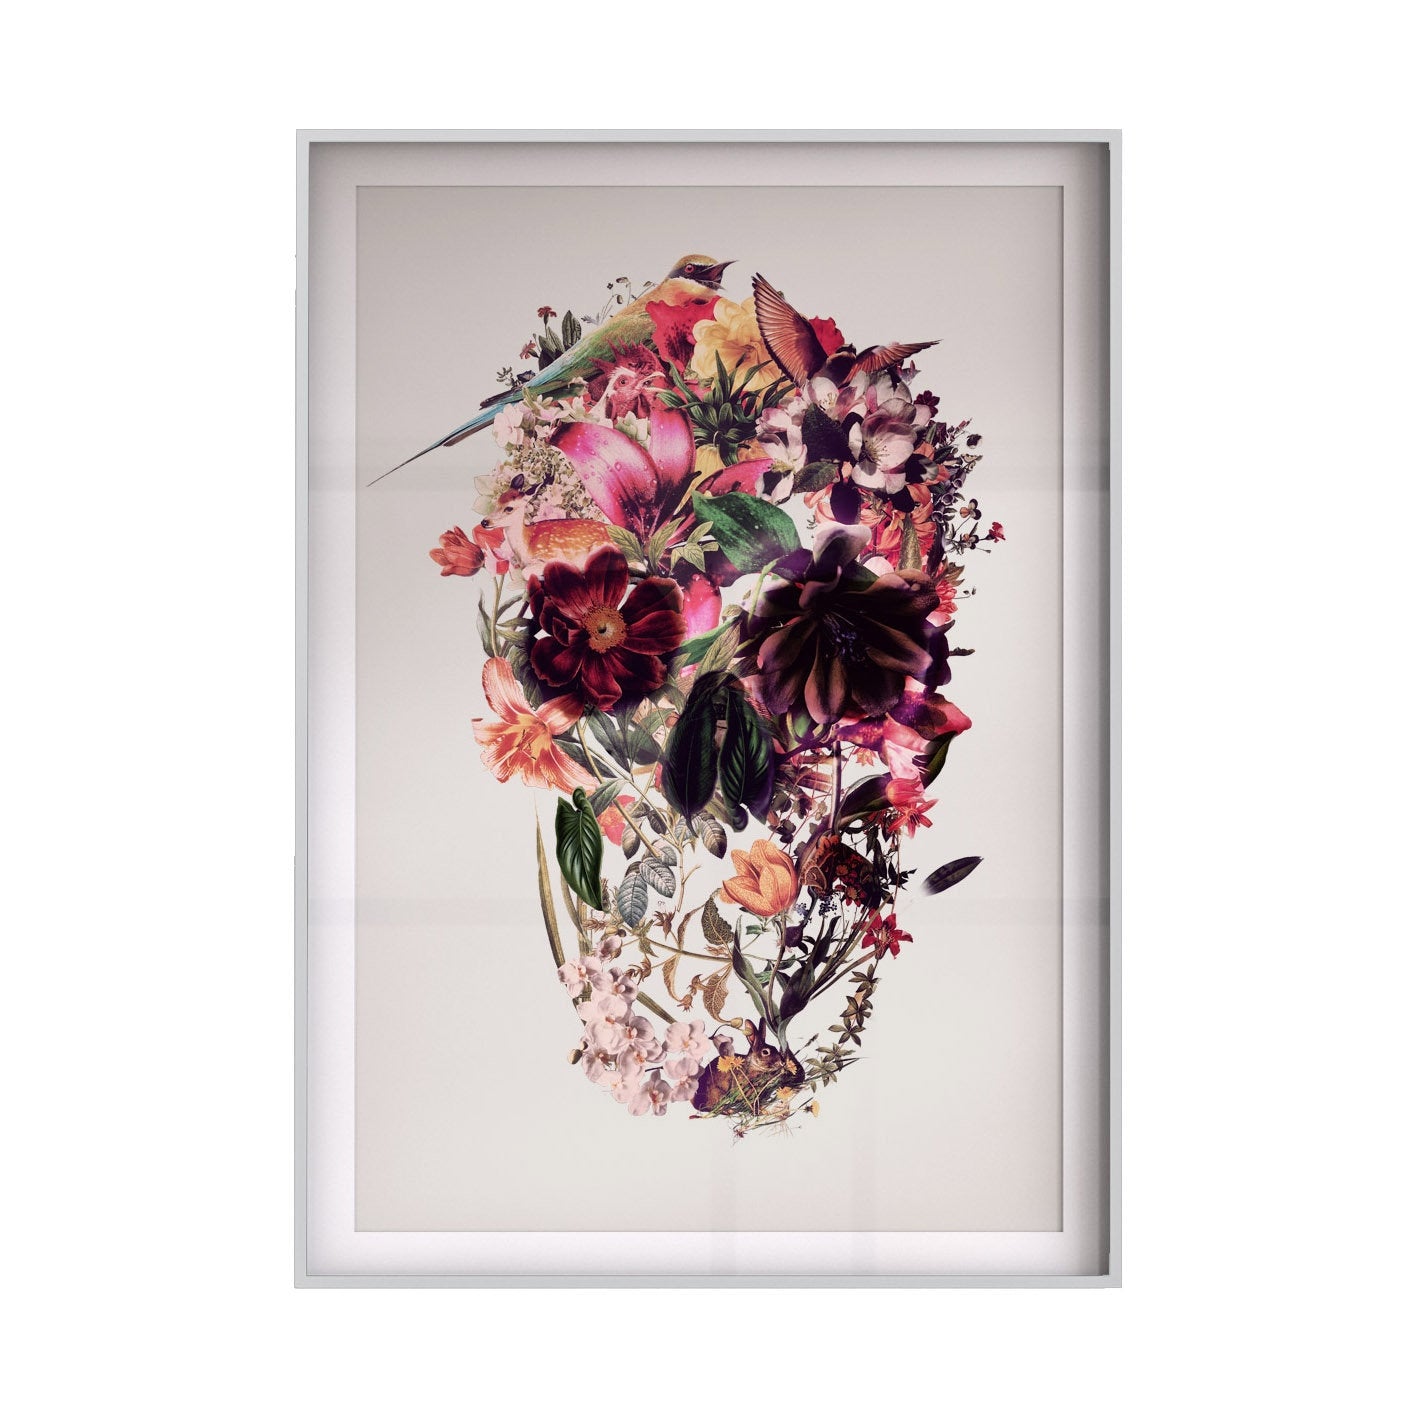 Set Of 3 Skull Art Print, Flower Skull Art Poster Set Home Decor, Sugar Skull Wall Art Gift Poster Set, A4 Instant Download Printable Skull